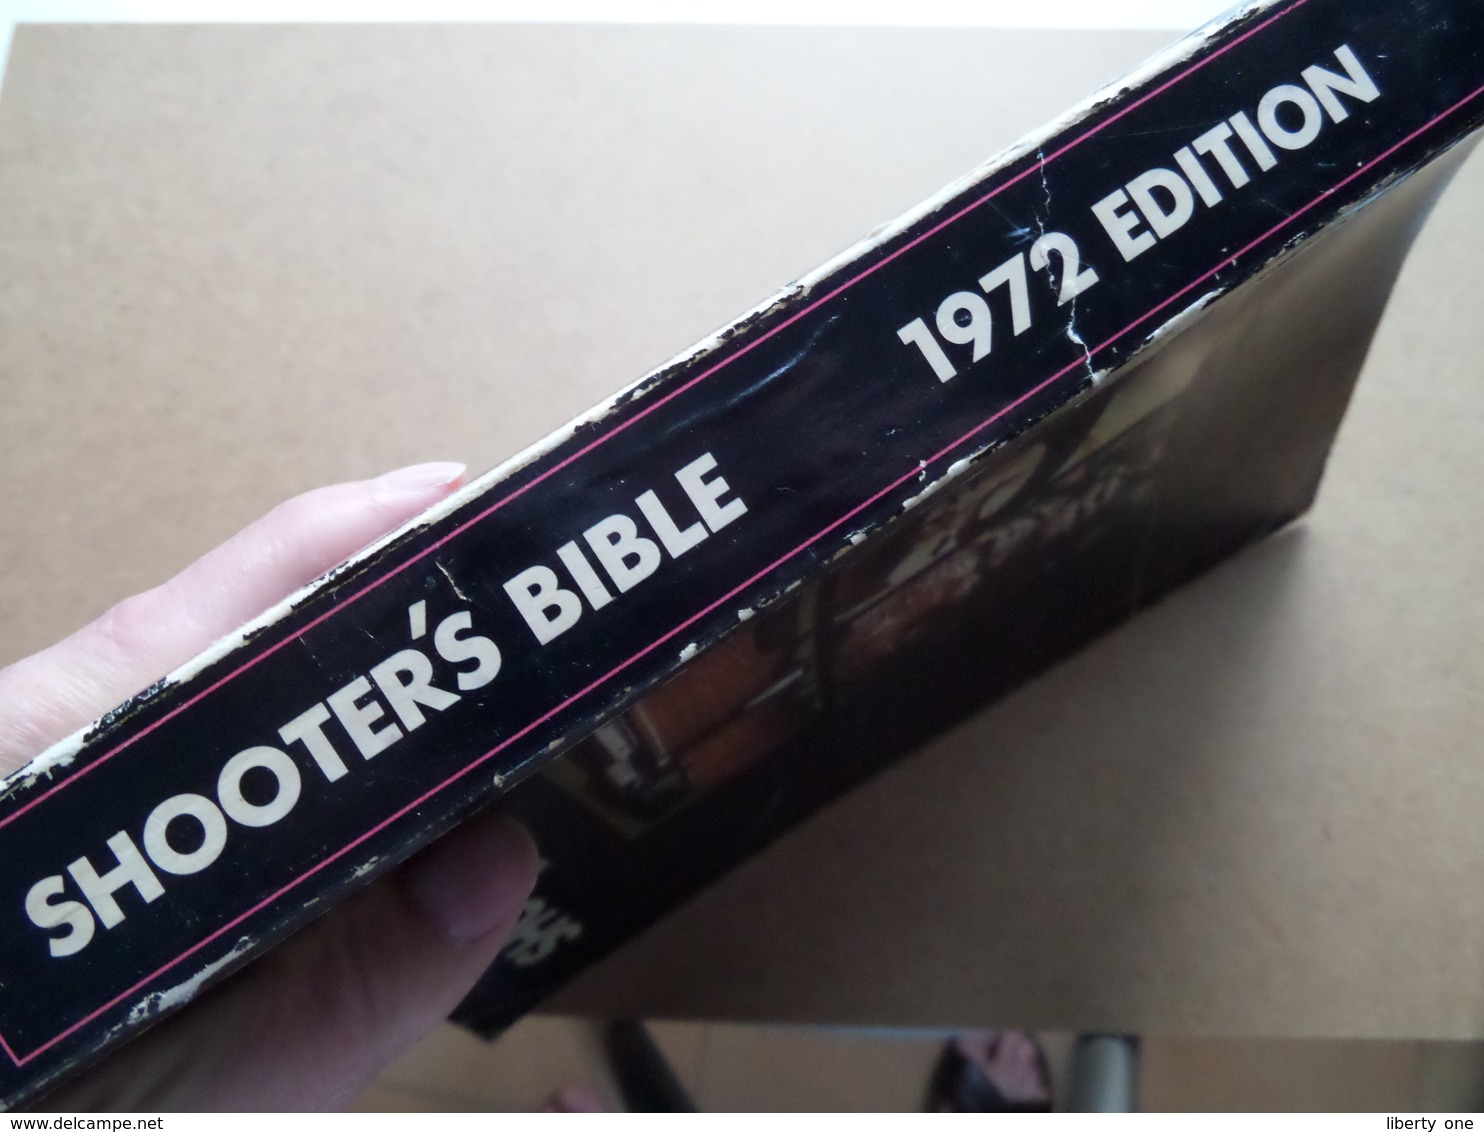 SHOOTER'S BIBLE World's Standard Firearms Reference Book ( N° 63 - Edition 1972 / Stoeger ) Older Book ! - Themengebiet Sammeln